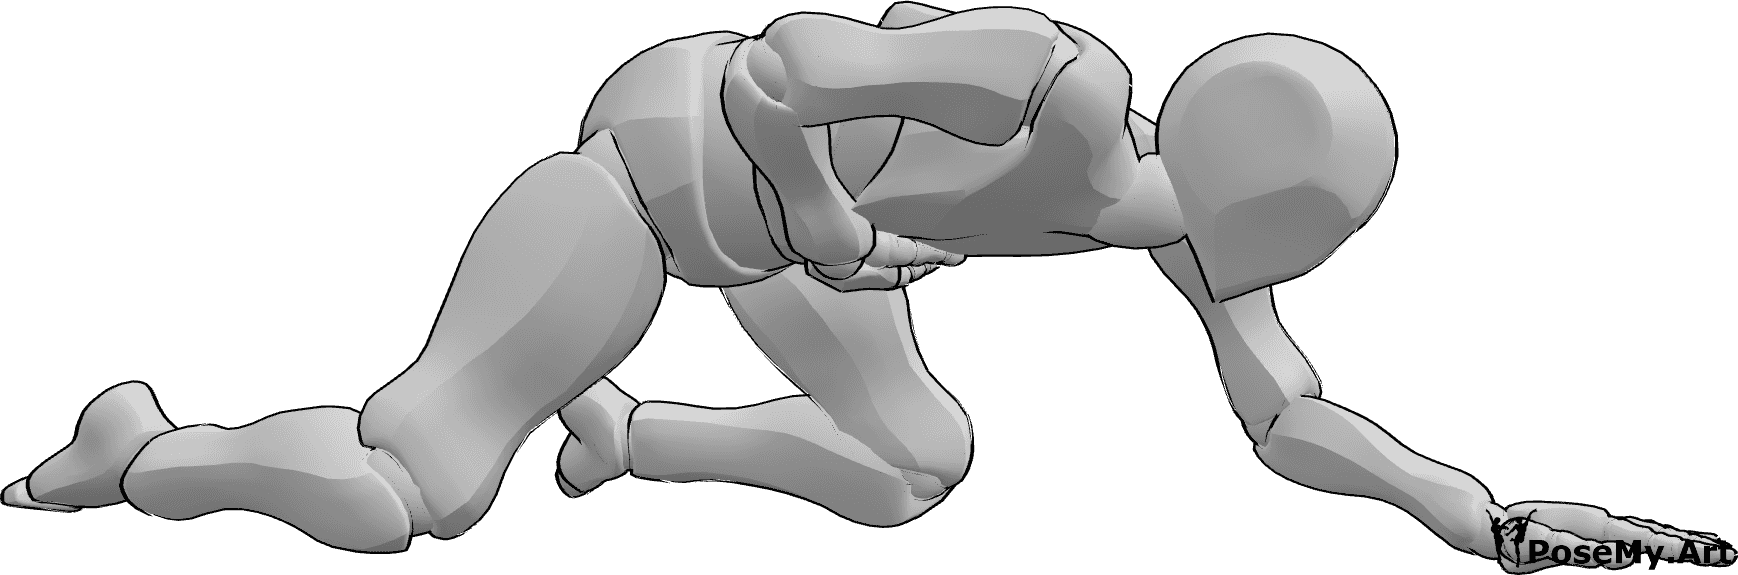 Posen-Referenz- Verletzte Krabbelposen - Der verletzte Mann hält sich den Bauch und krabbelt auf den Knien